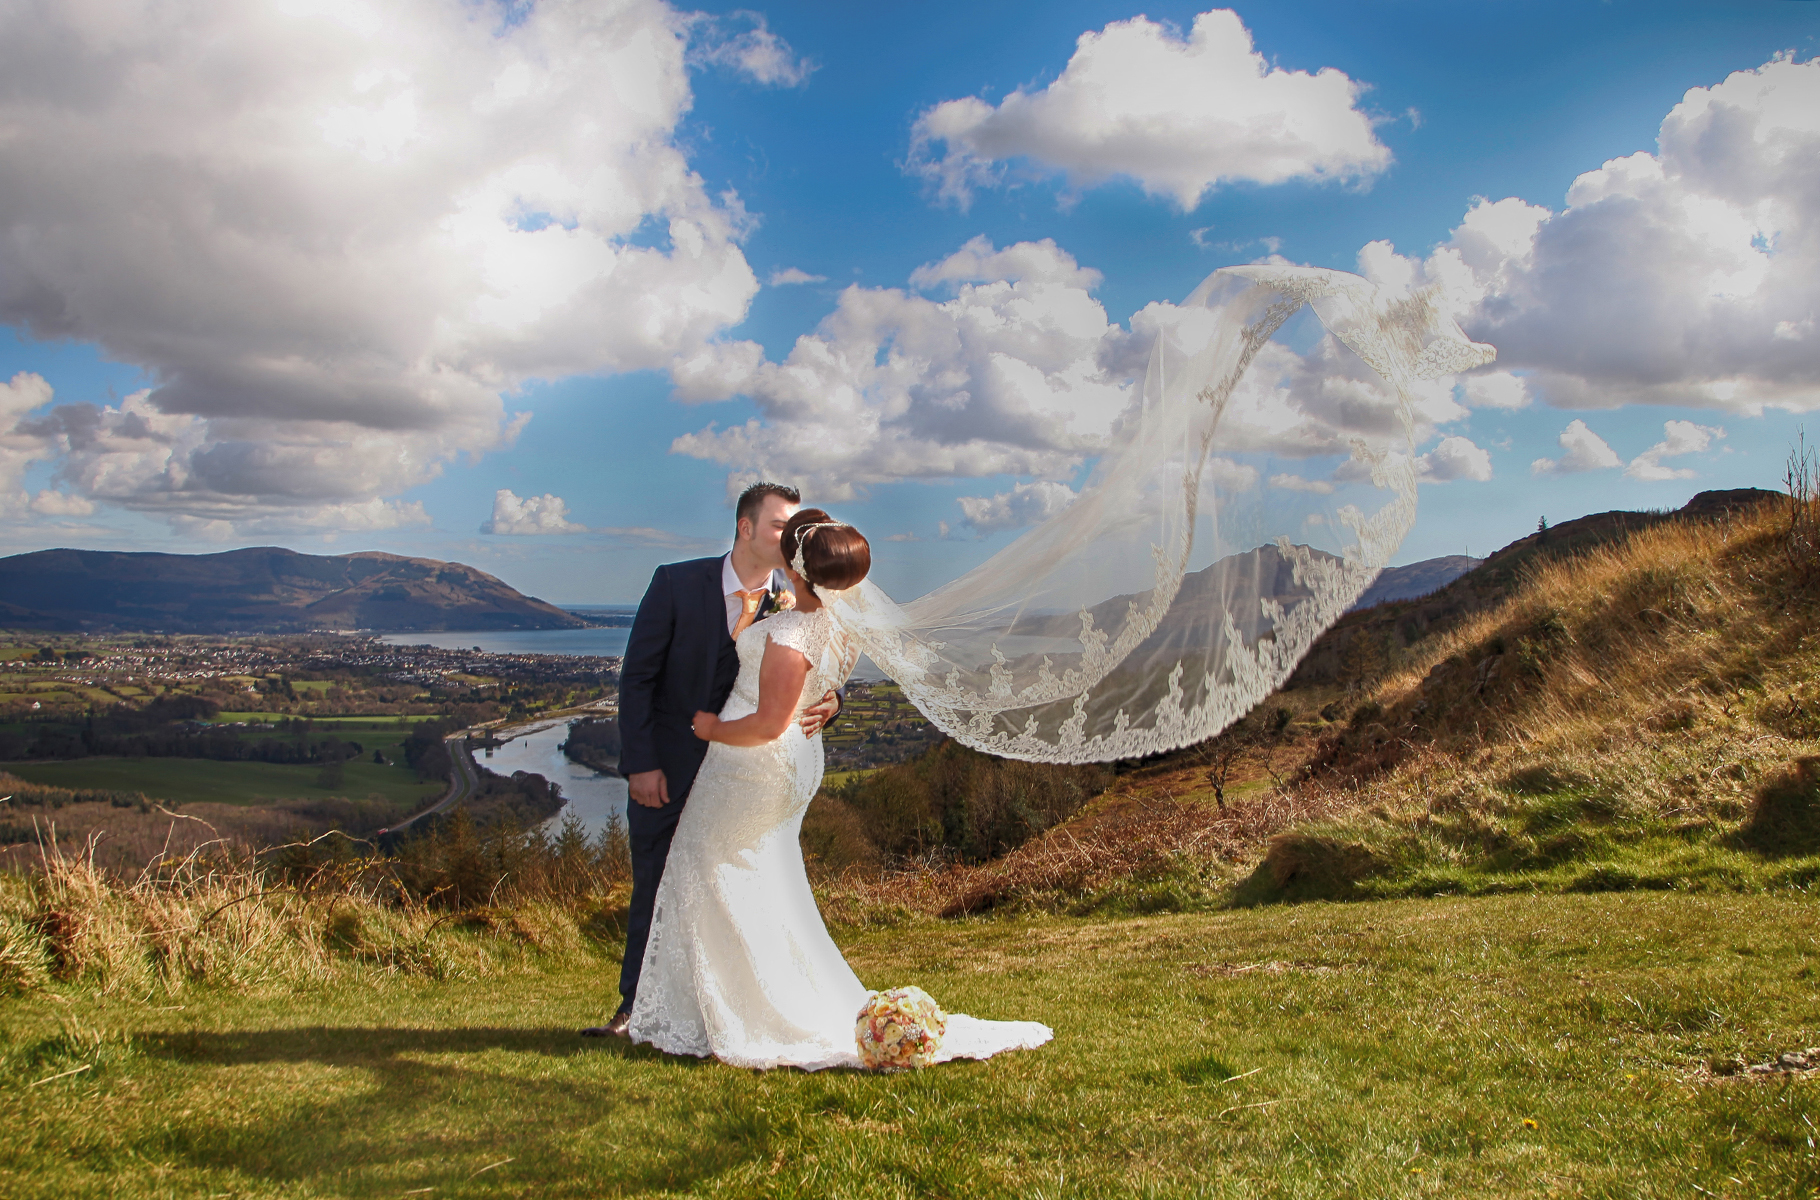 Wedding Photography With AL Photography Ireland & Northern Ireland